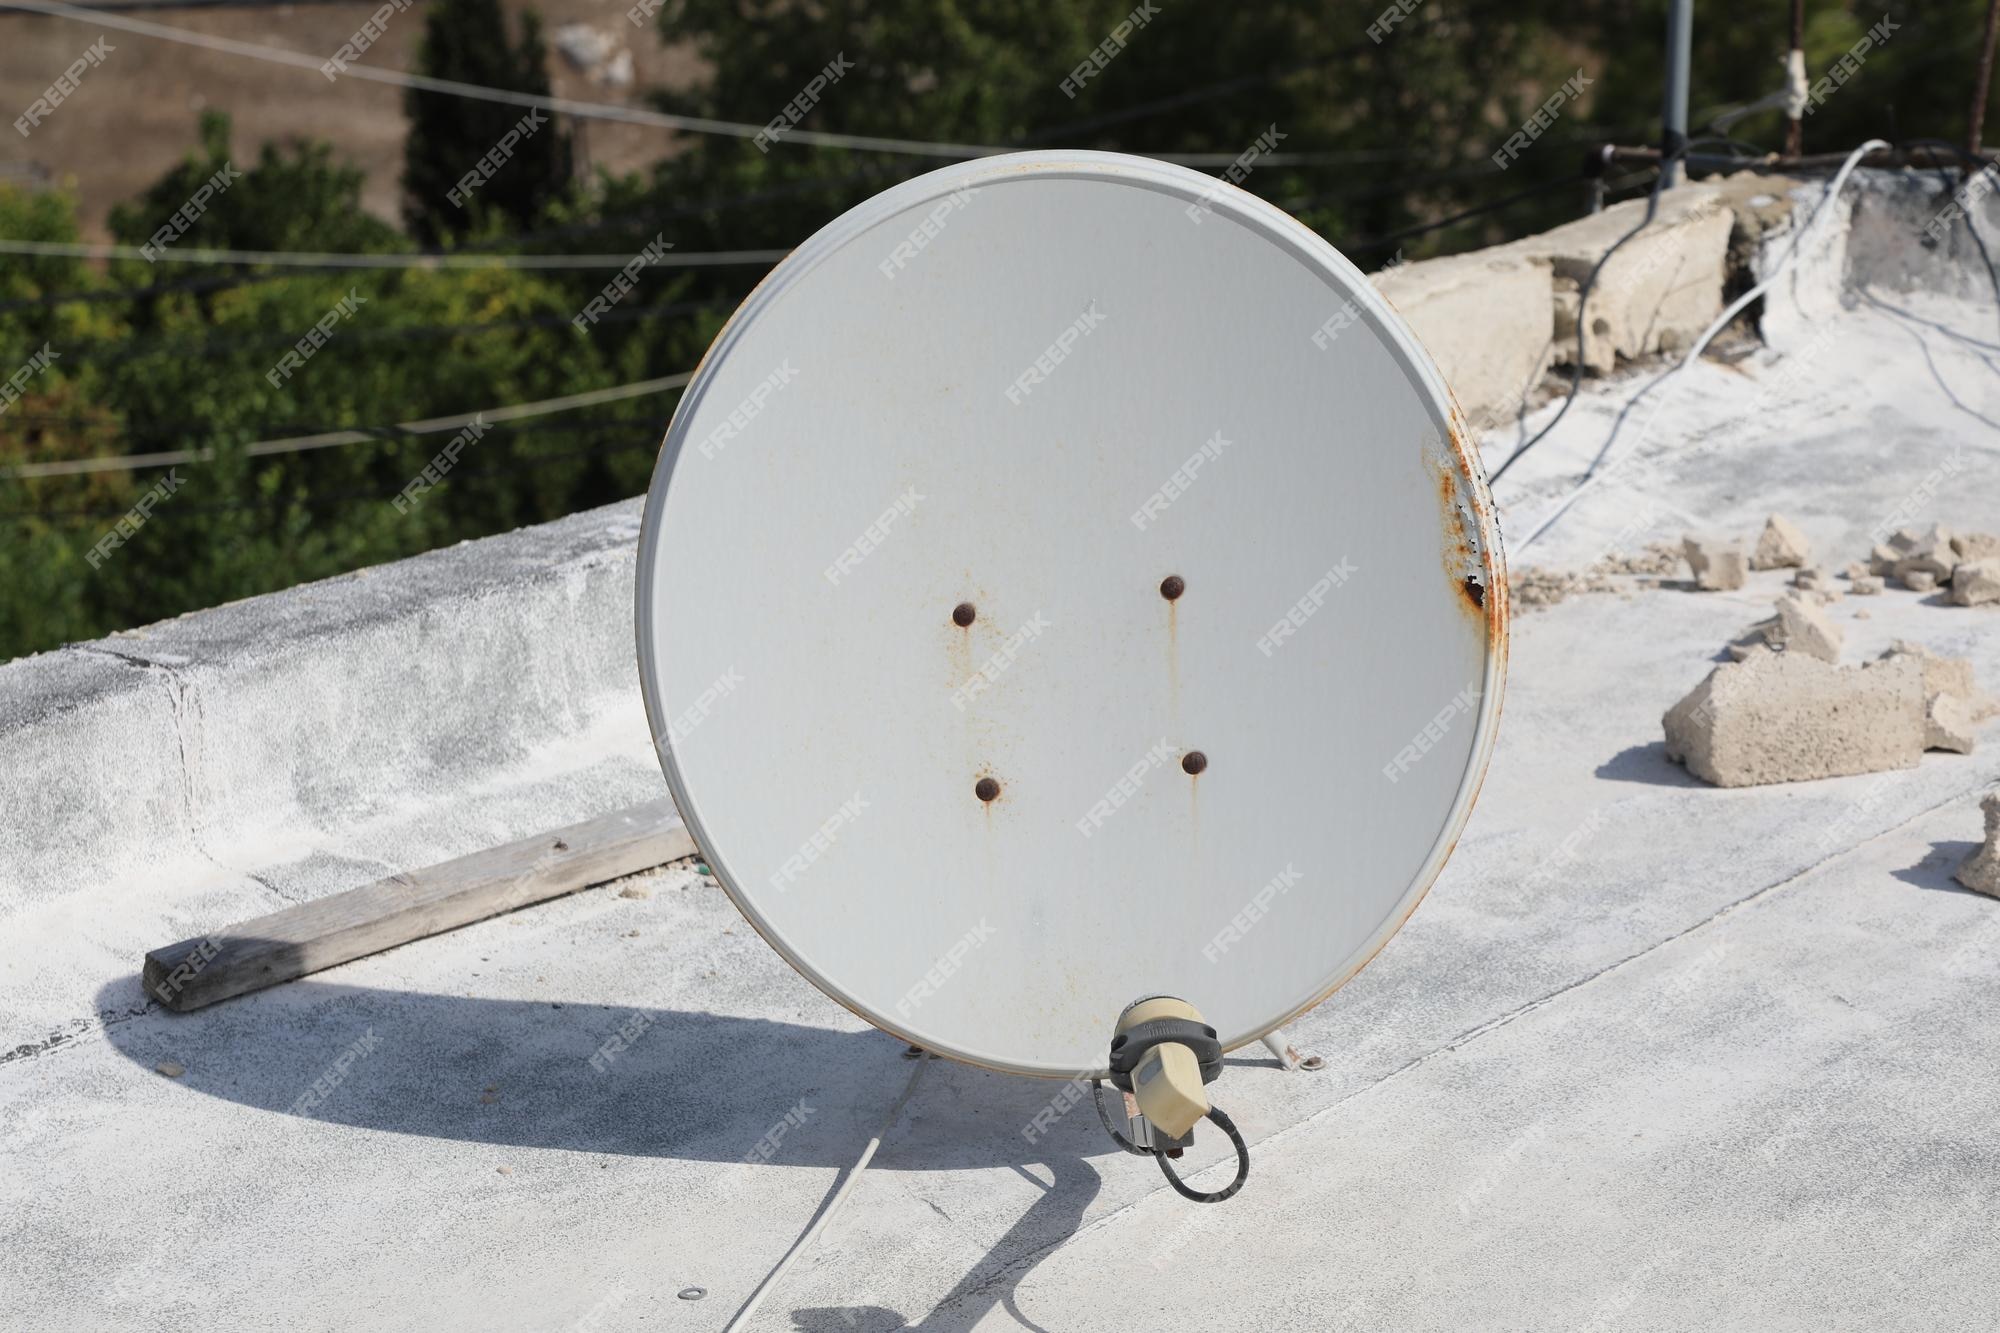 Receptor de antena parabólica diseñado para capturar señales del espacio  que permiten una transmisión perfecta